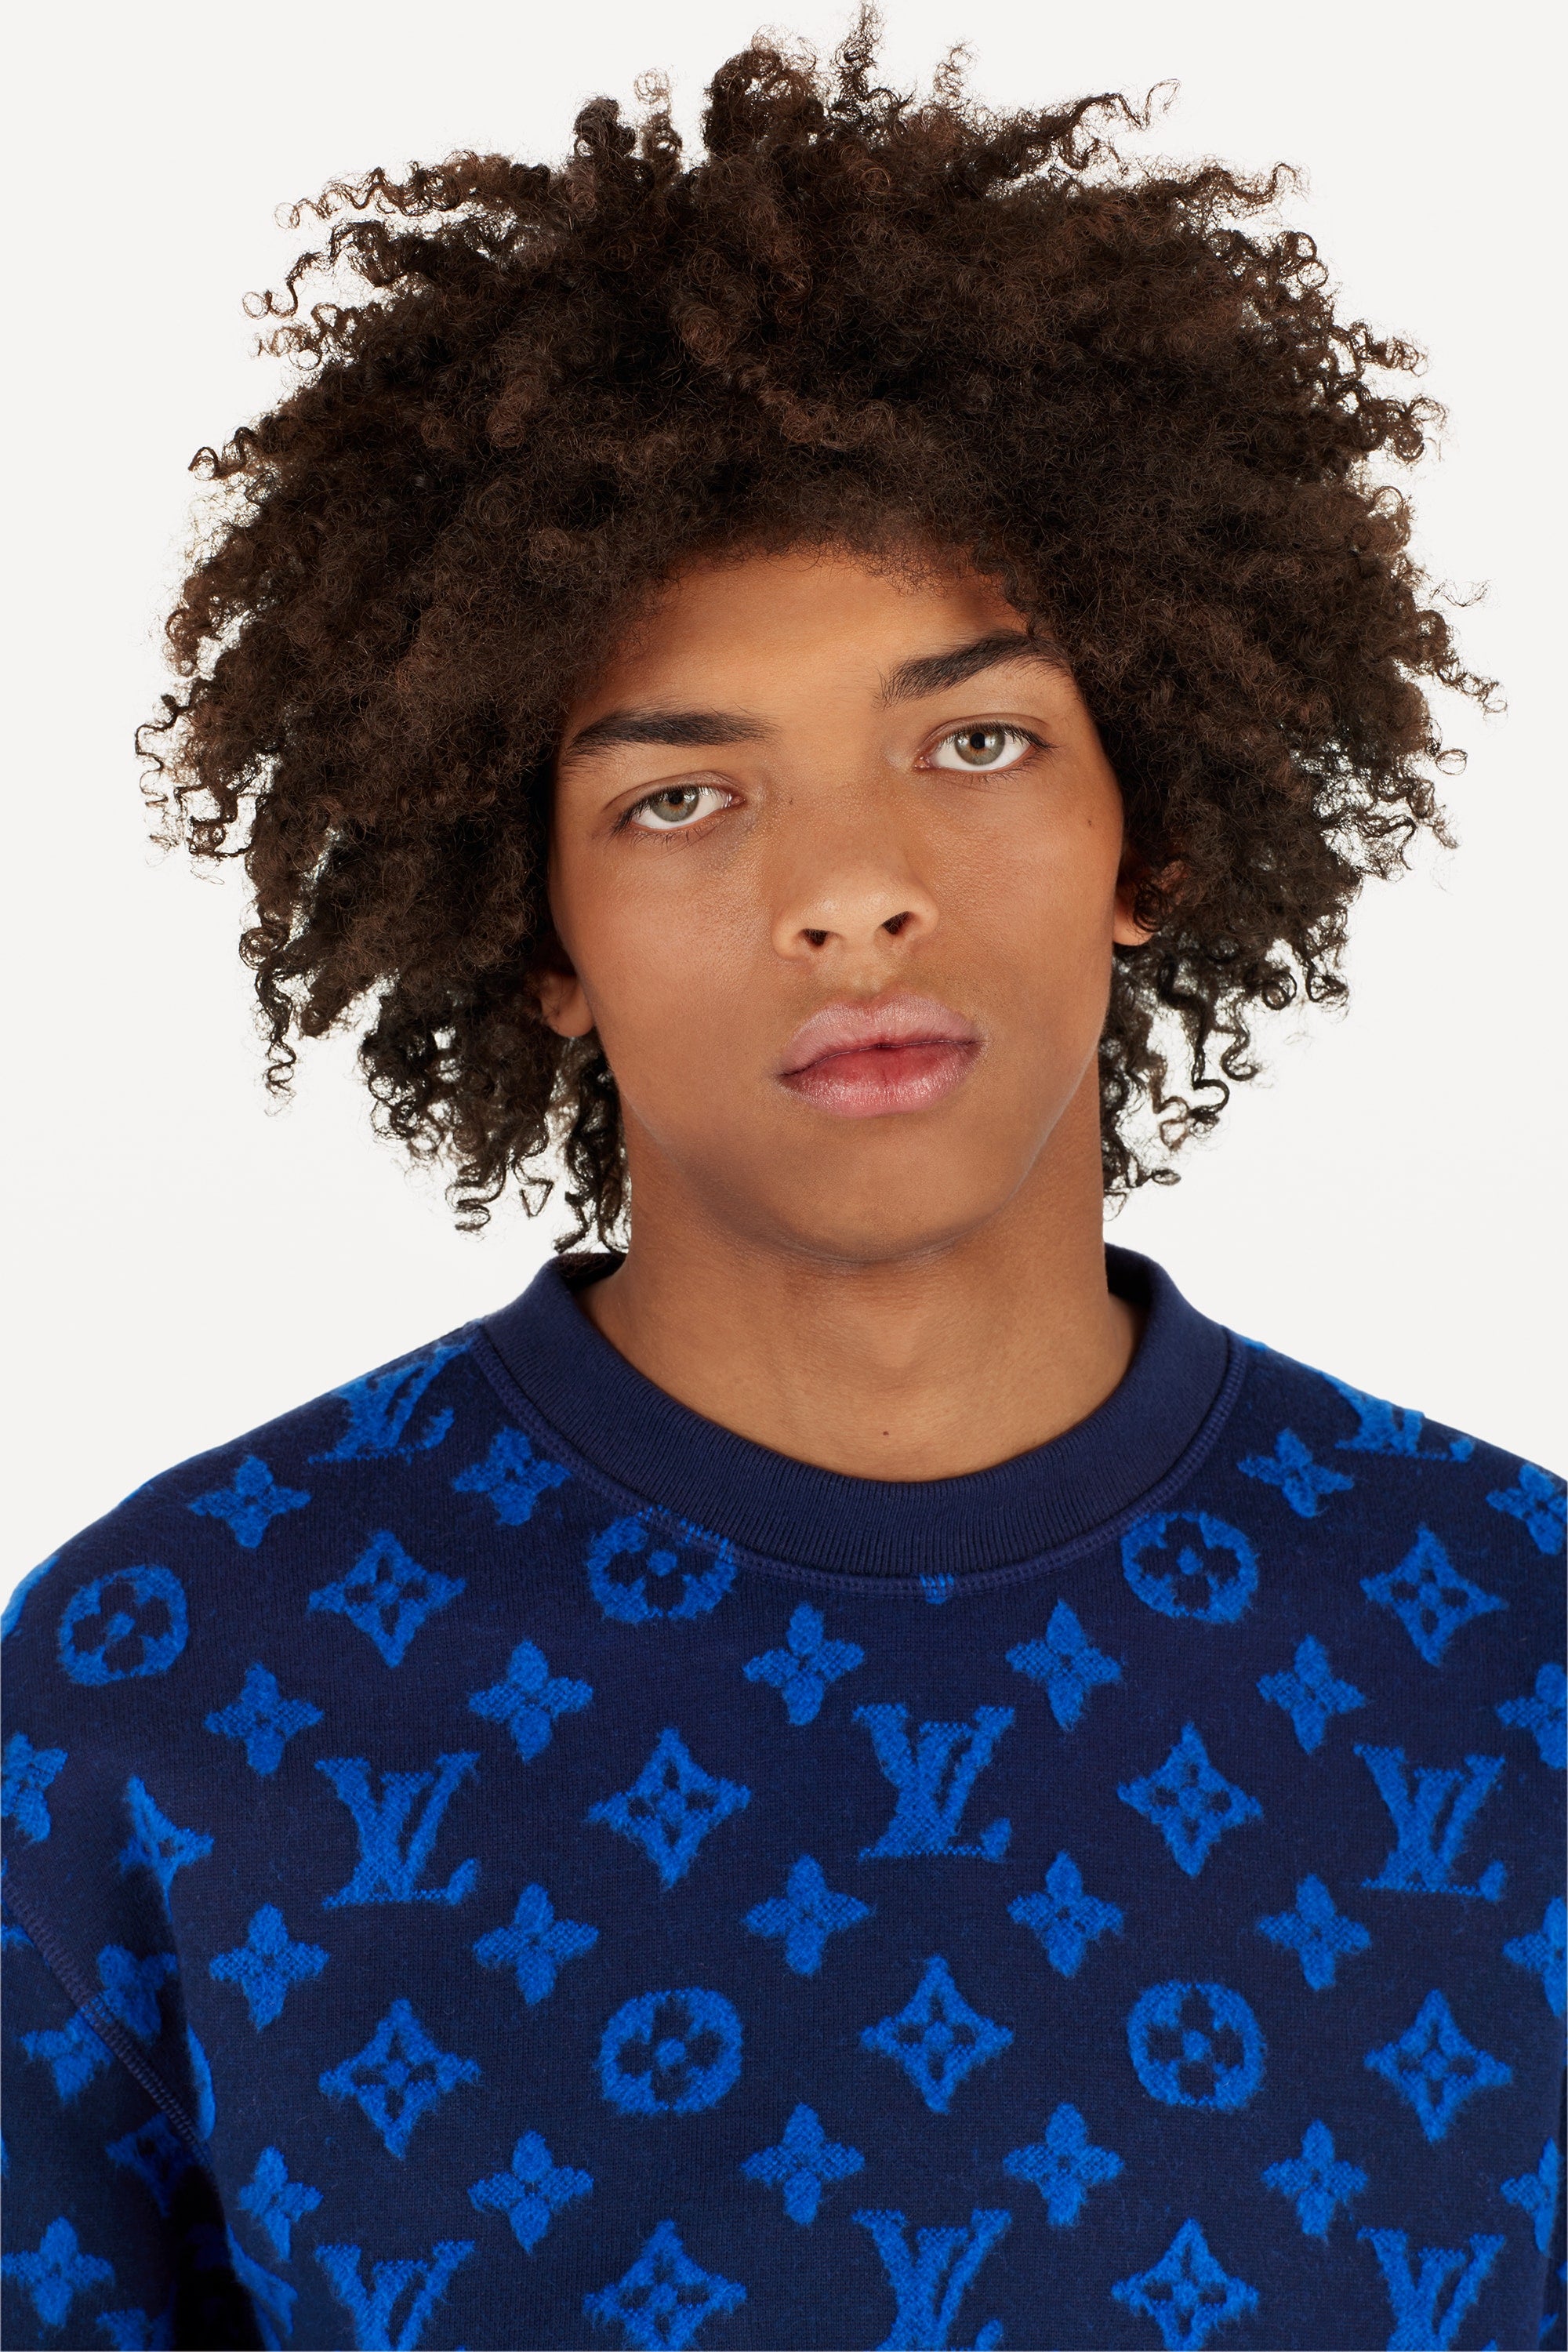 Louis Vuitton Full Monogram Jacquard Crewneck Sweatshirt Navy Size M Logo  20SS